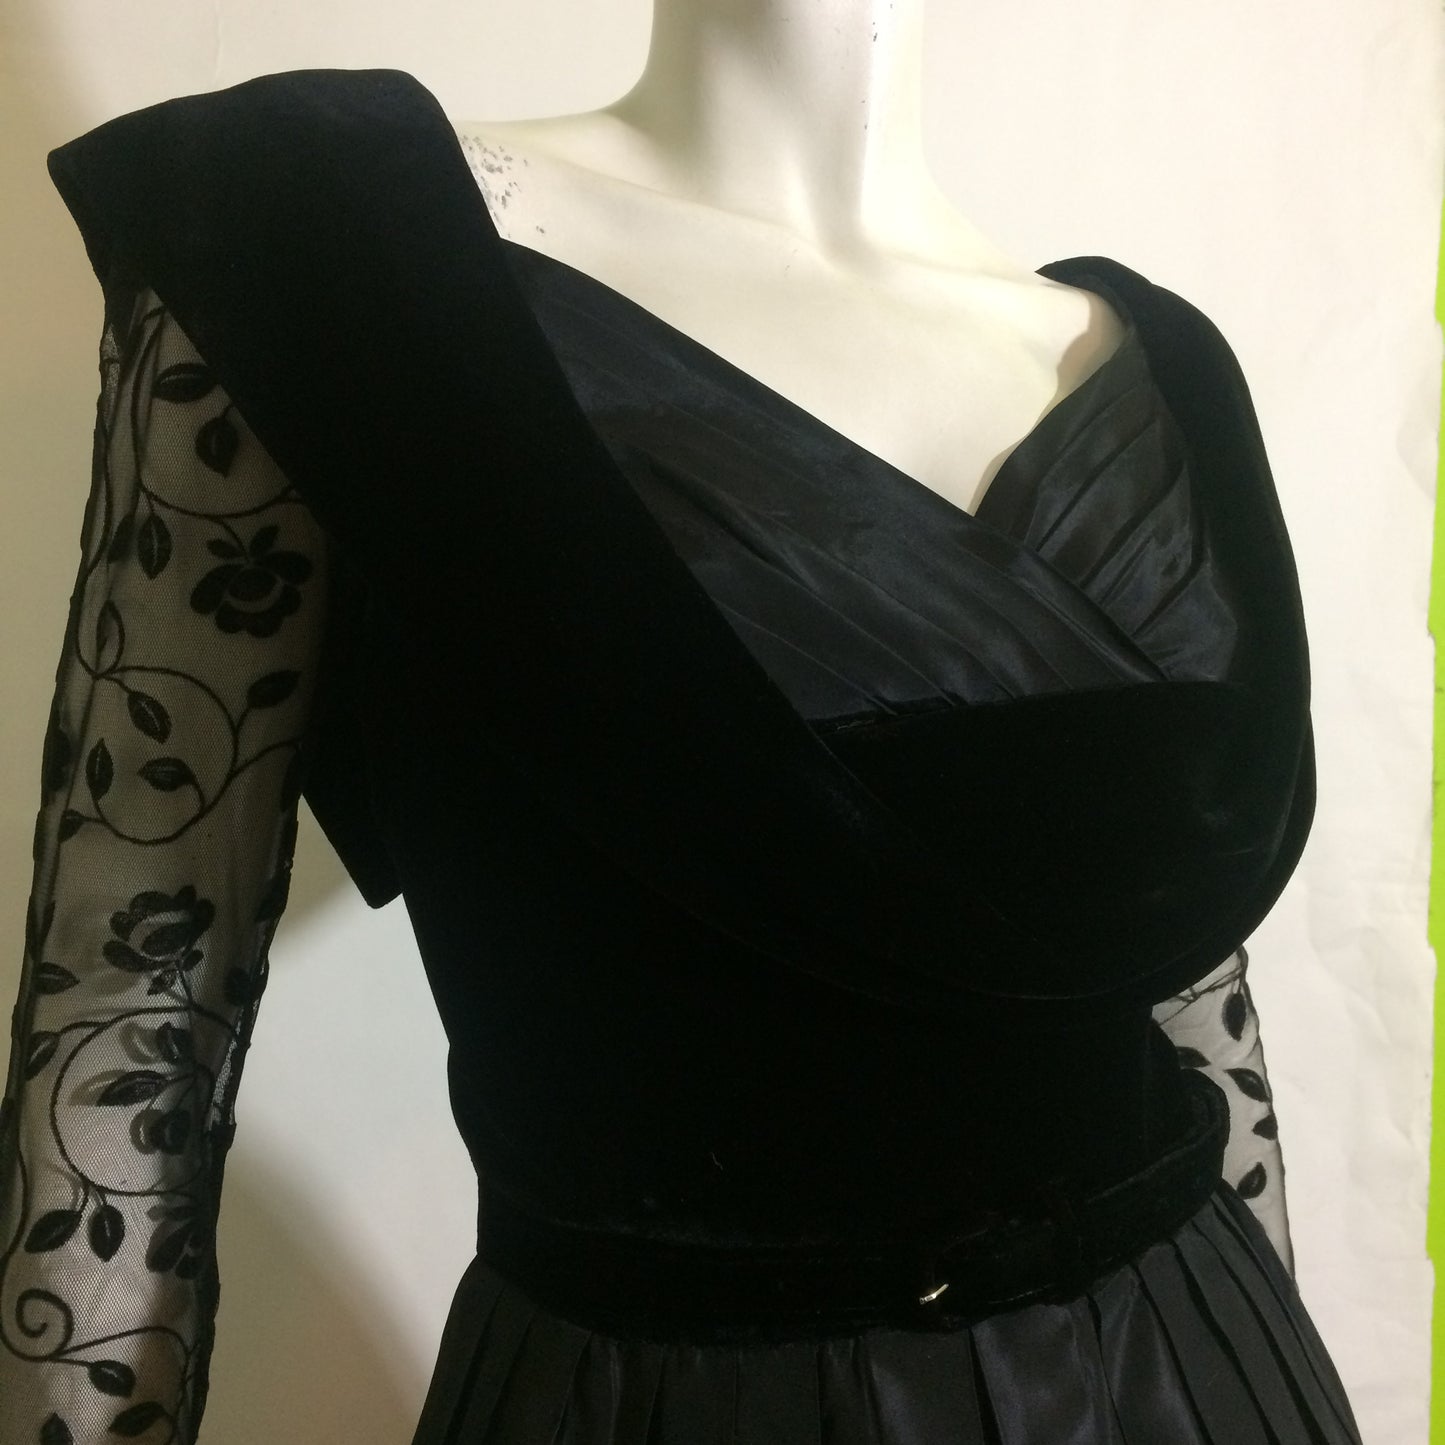 Nipped Waist Black Taffeta and Velvet Full Skirt Cocktail Dress circa 1950s